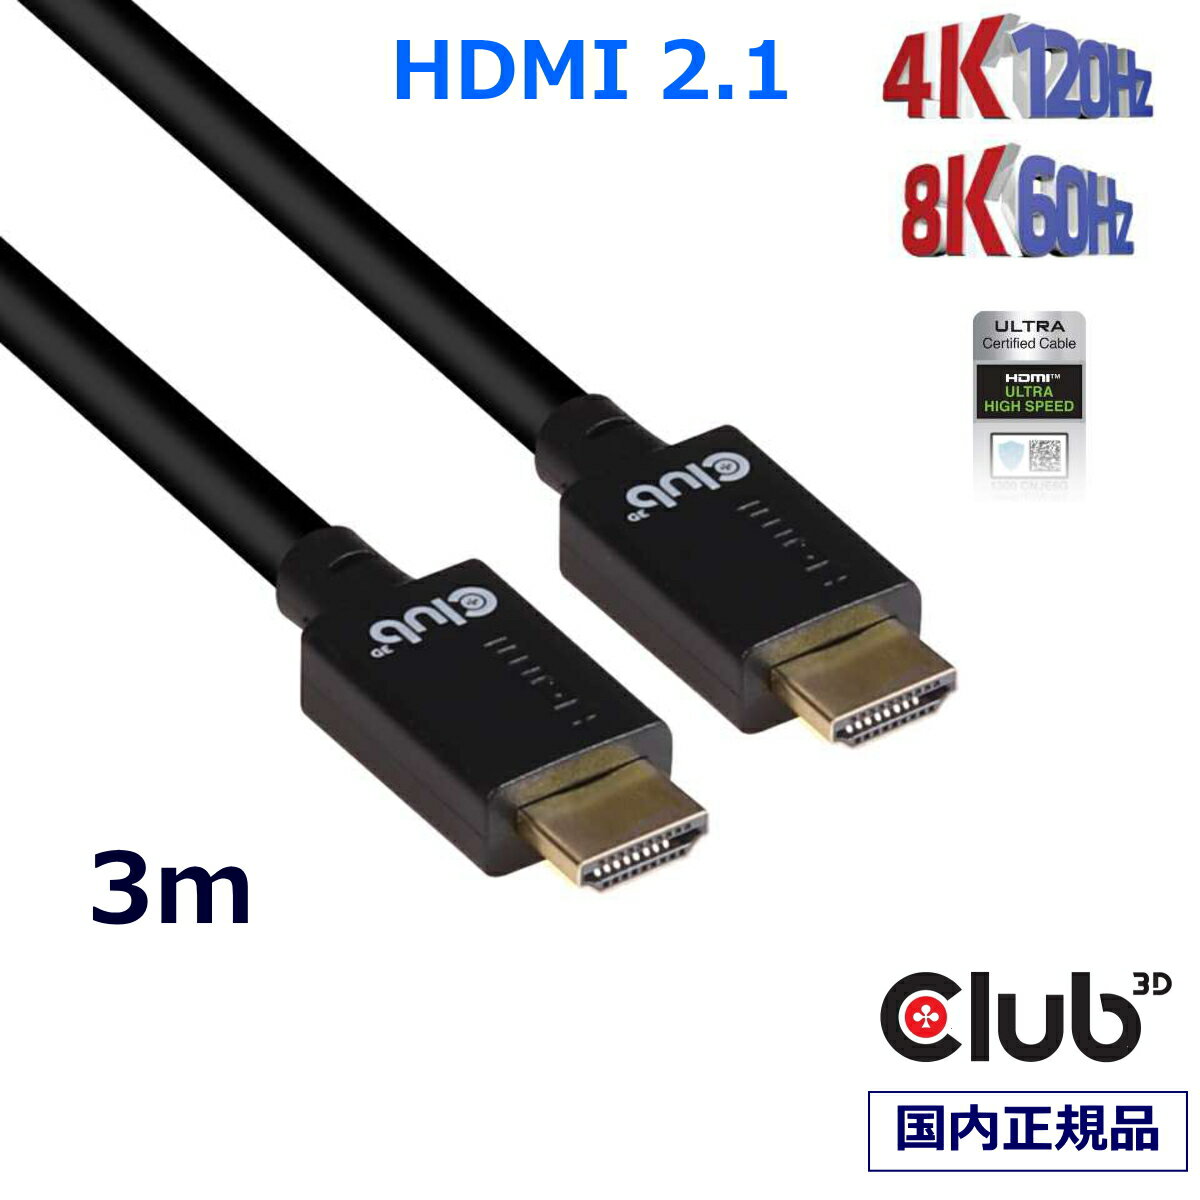 国内正規品 Club3D HDMI 2.1 4K120Hz 8K 60Hz 48Gbps Male/Male 3m 26AWG Ultra High Speed Cable ウルトラ ハイスピード 認証ケーブル (CAC-1373)